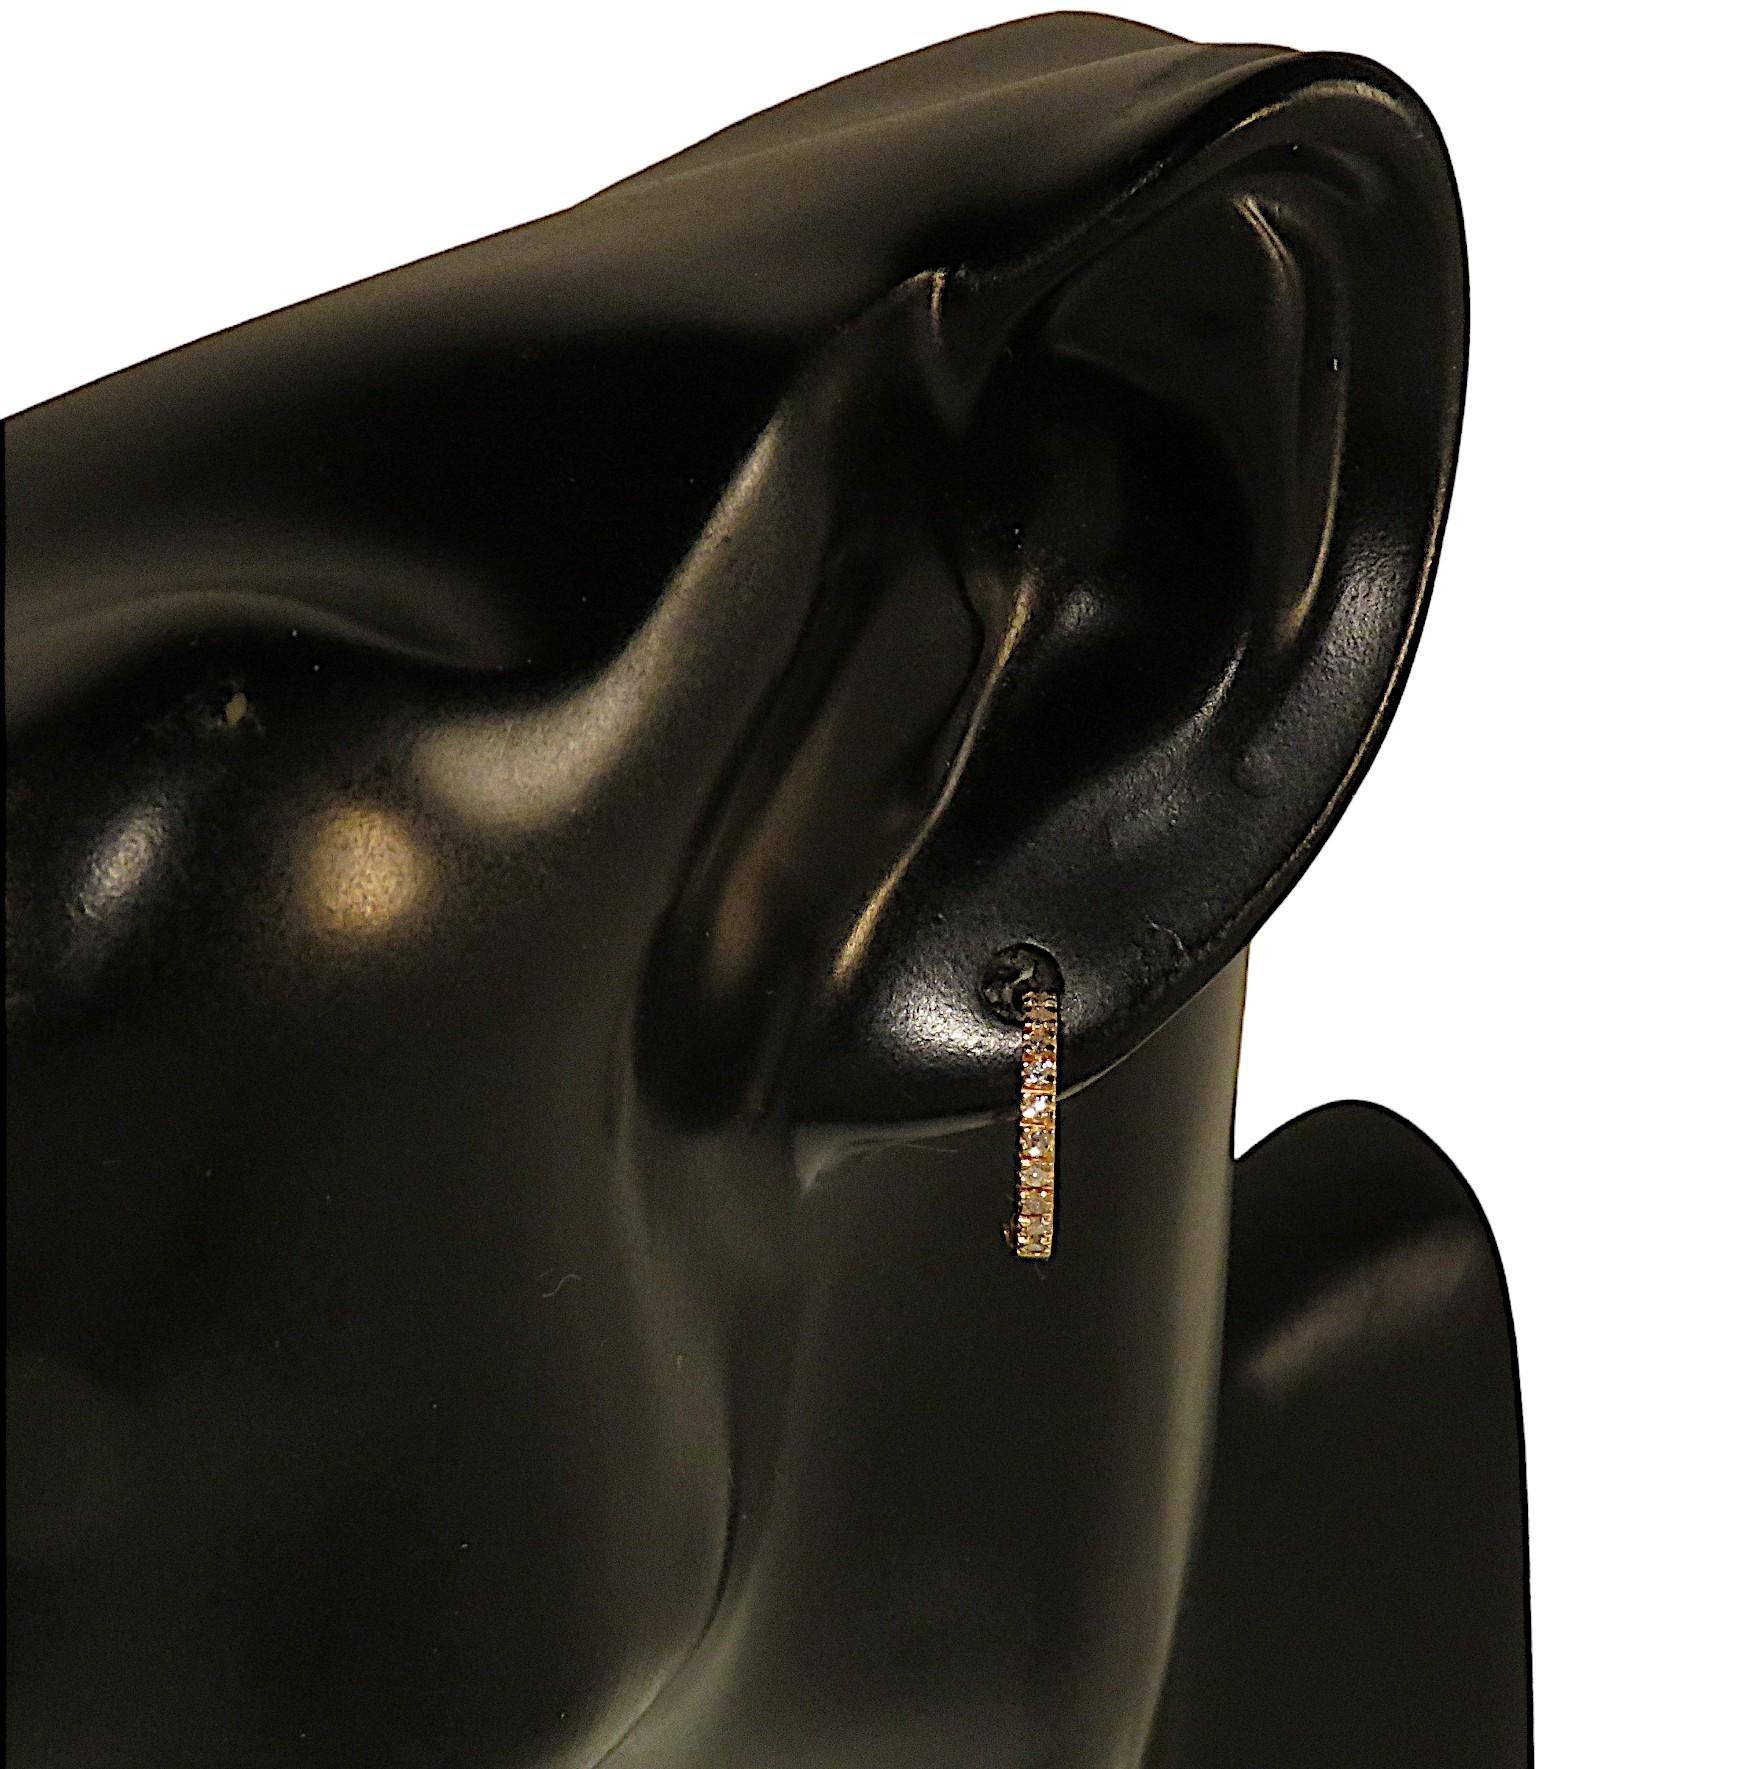 Einzelner Ohrring von Botta Gioielli in Mailand aus 9 Karat Roségold mit Diamanten im Brillantschliff von insgesamt 0,12 Karat.  Der Felgendurchmesser beträgt 14 mm / 0,55 Zoll. Der Ohrring hat einen Scharnierverschluss. Das Gesamtgewicht des